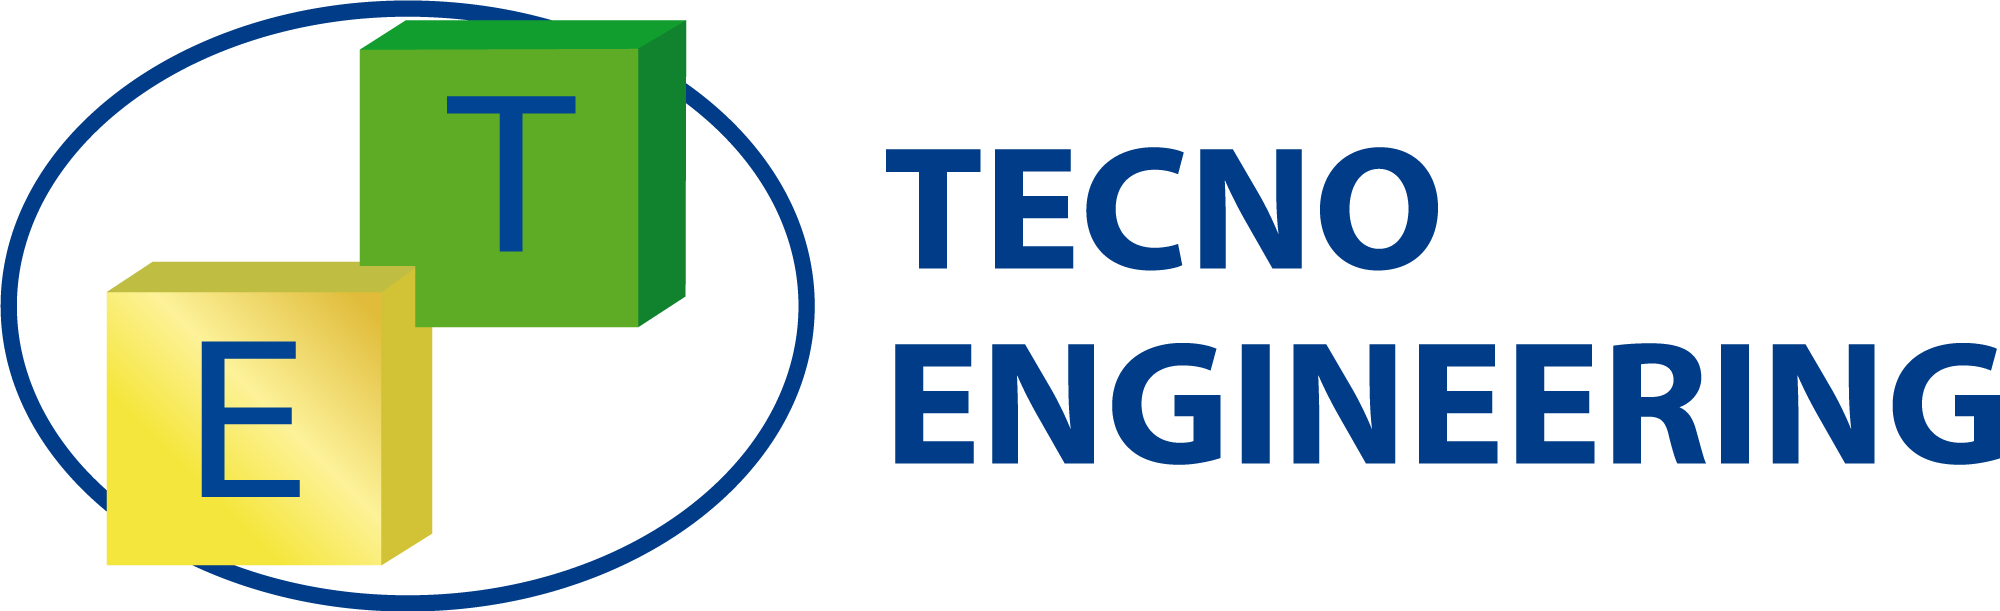 logo-tecno-engineering.png